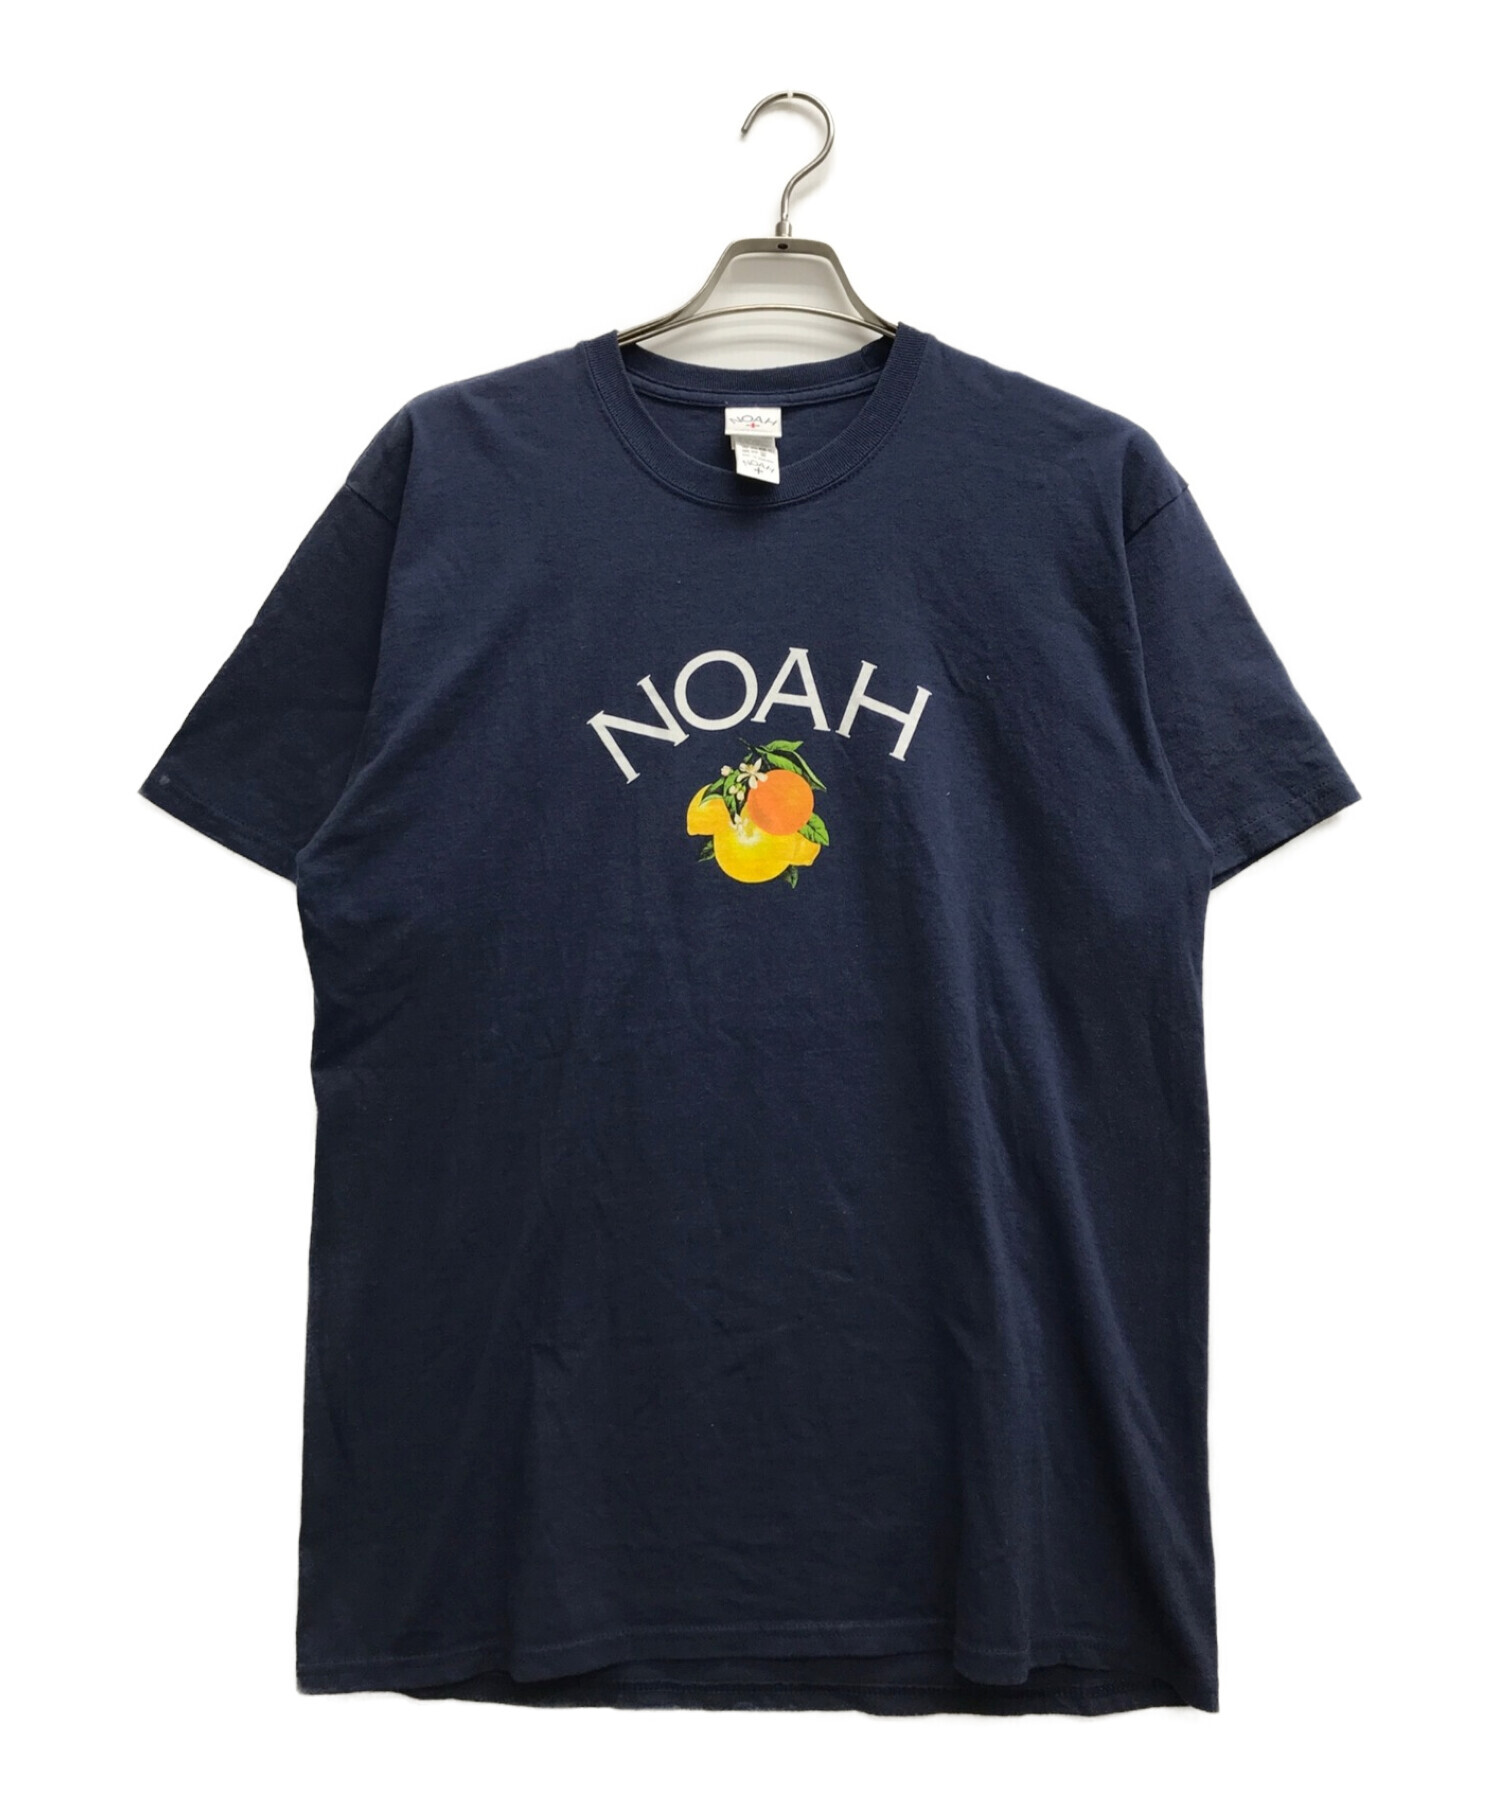 ノア NOAH シャツ付属情報について